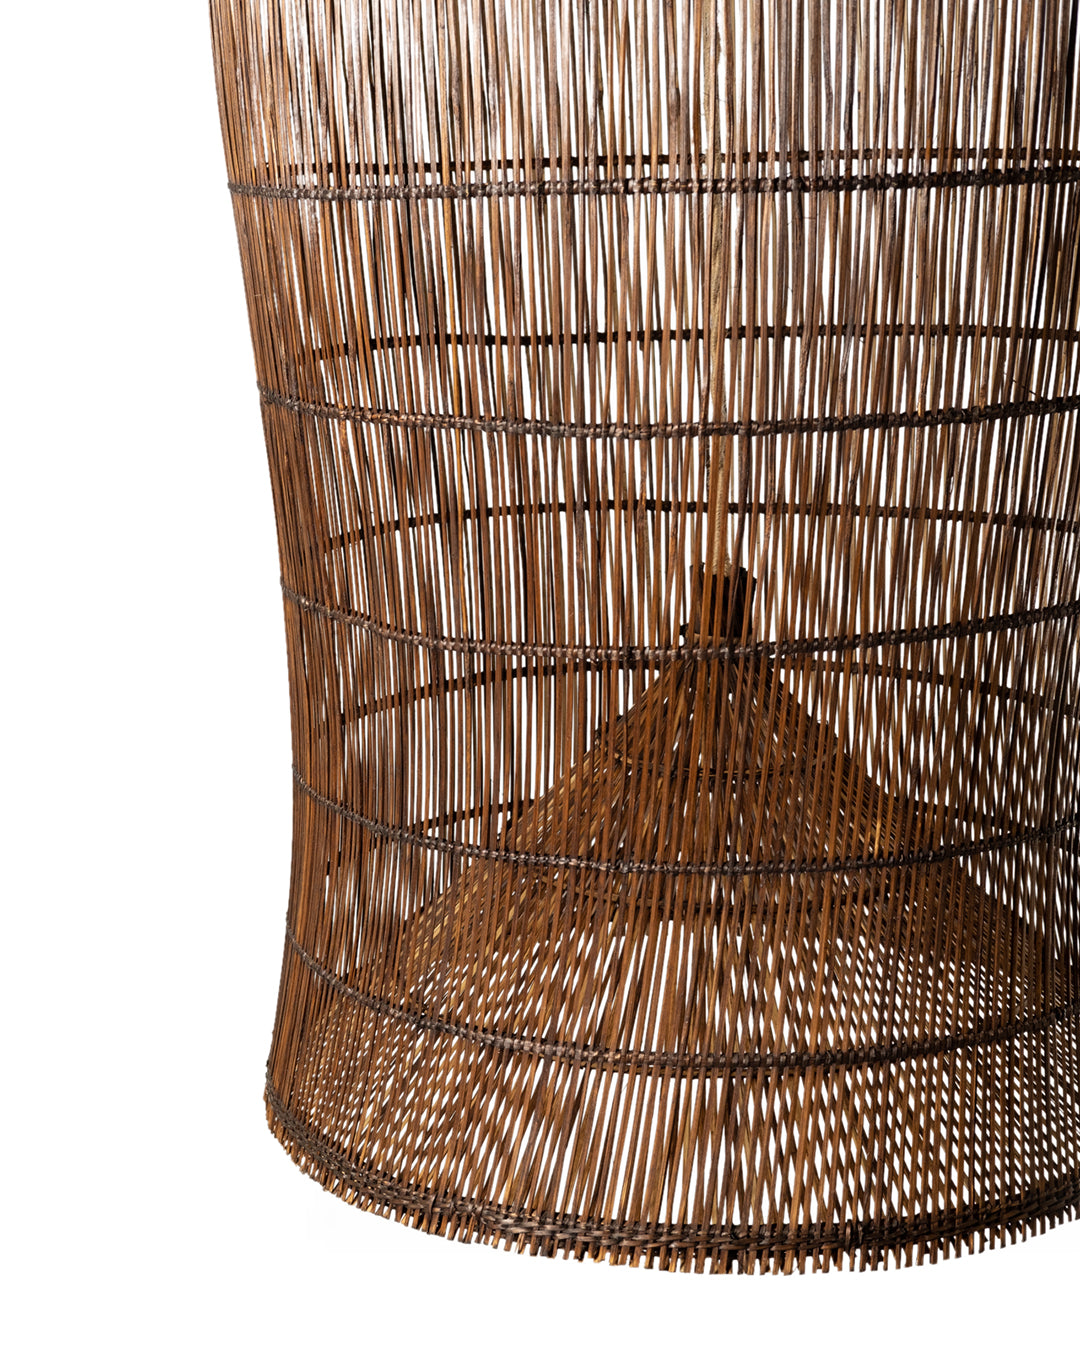 Lampara Gigante colgante de techo de ratán natural Kamboja C con forma de campana, tejida a mano con acabado oscuro, altura 115 cm diámetro 58 cm, origen Indonesia